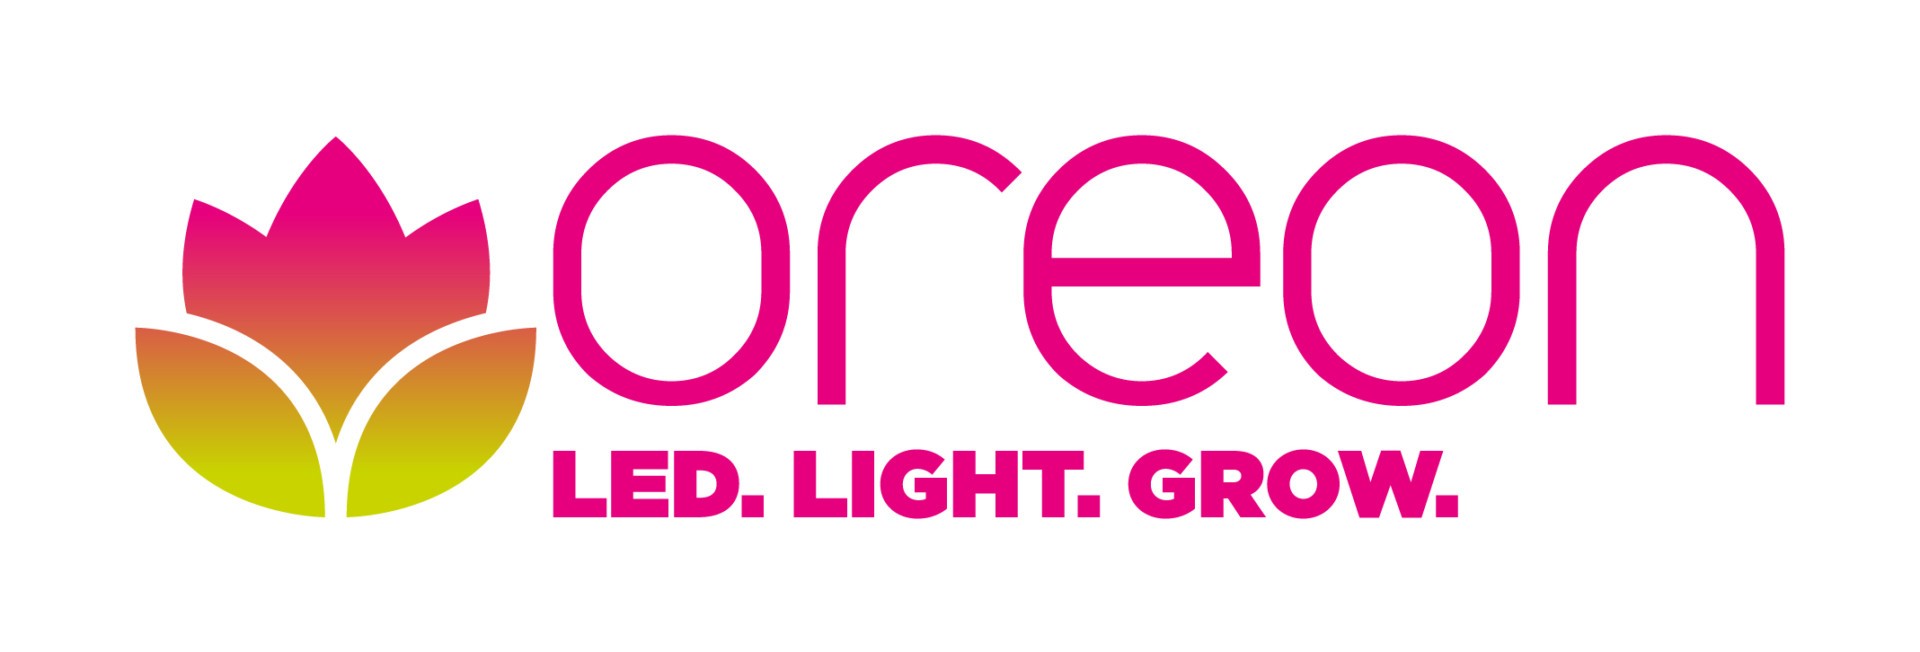 Oreon_logo